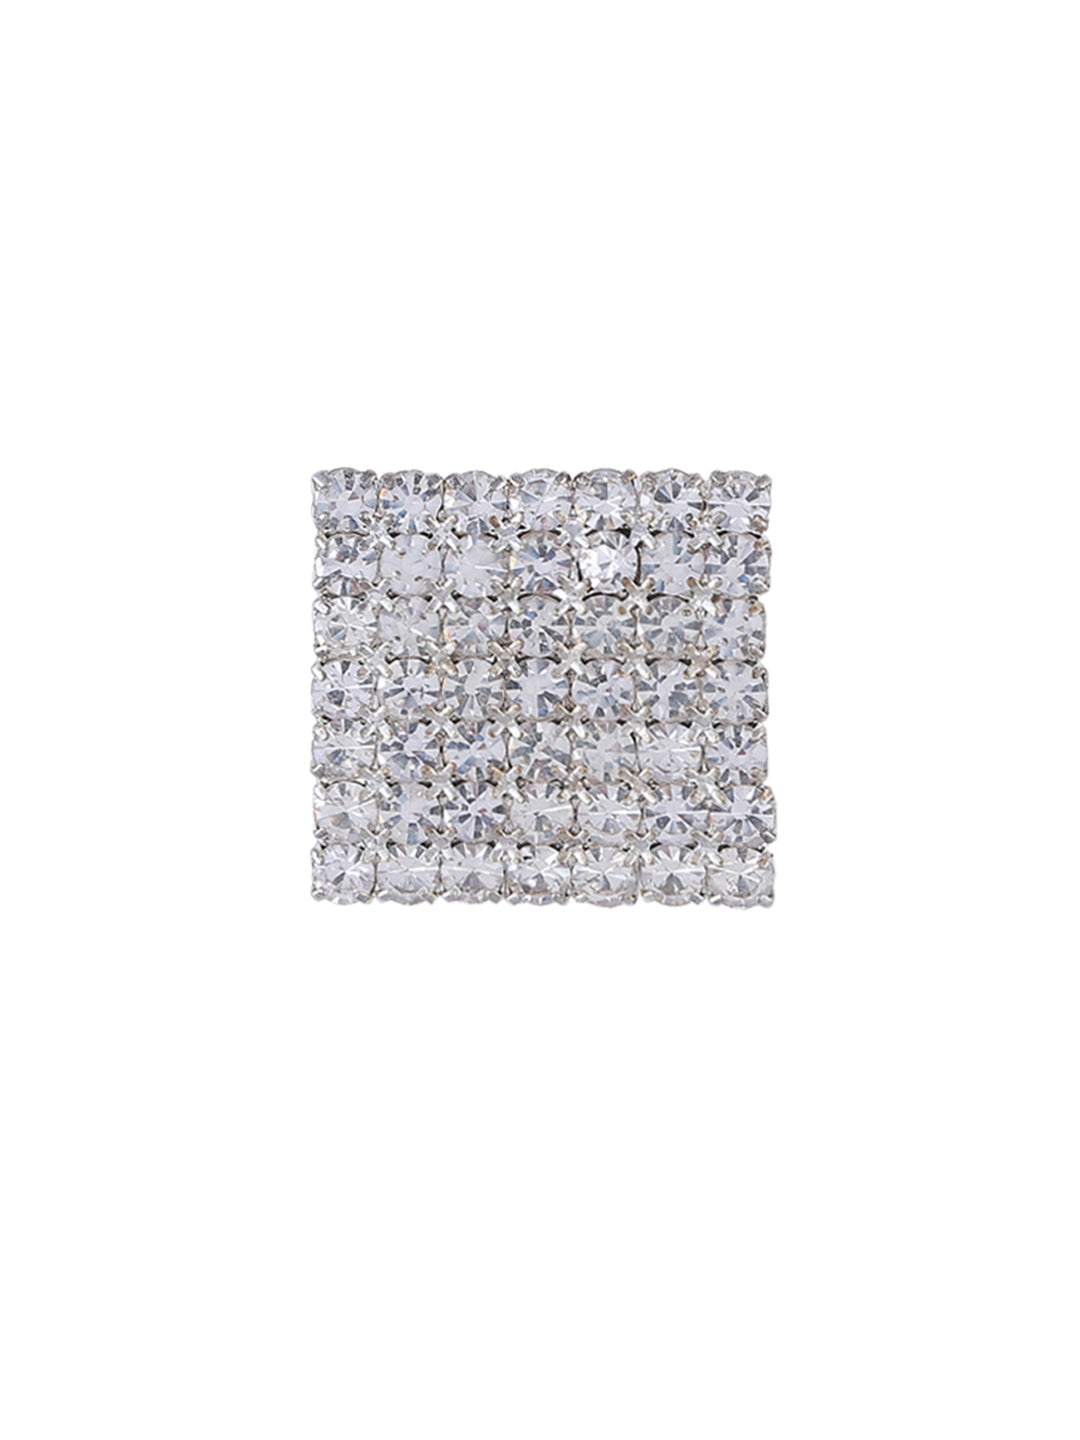 Square Shape Silver Diamonds Brooch Pin